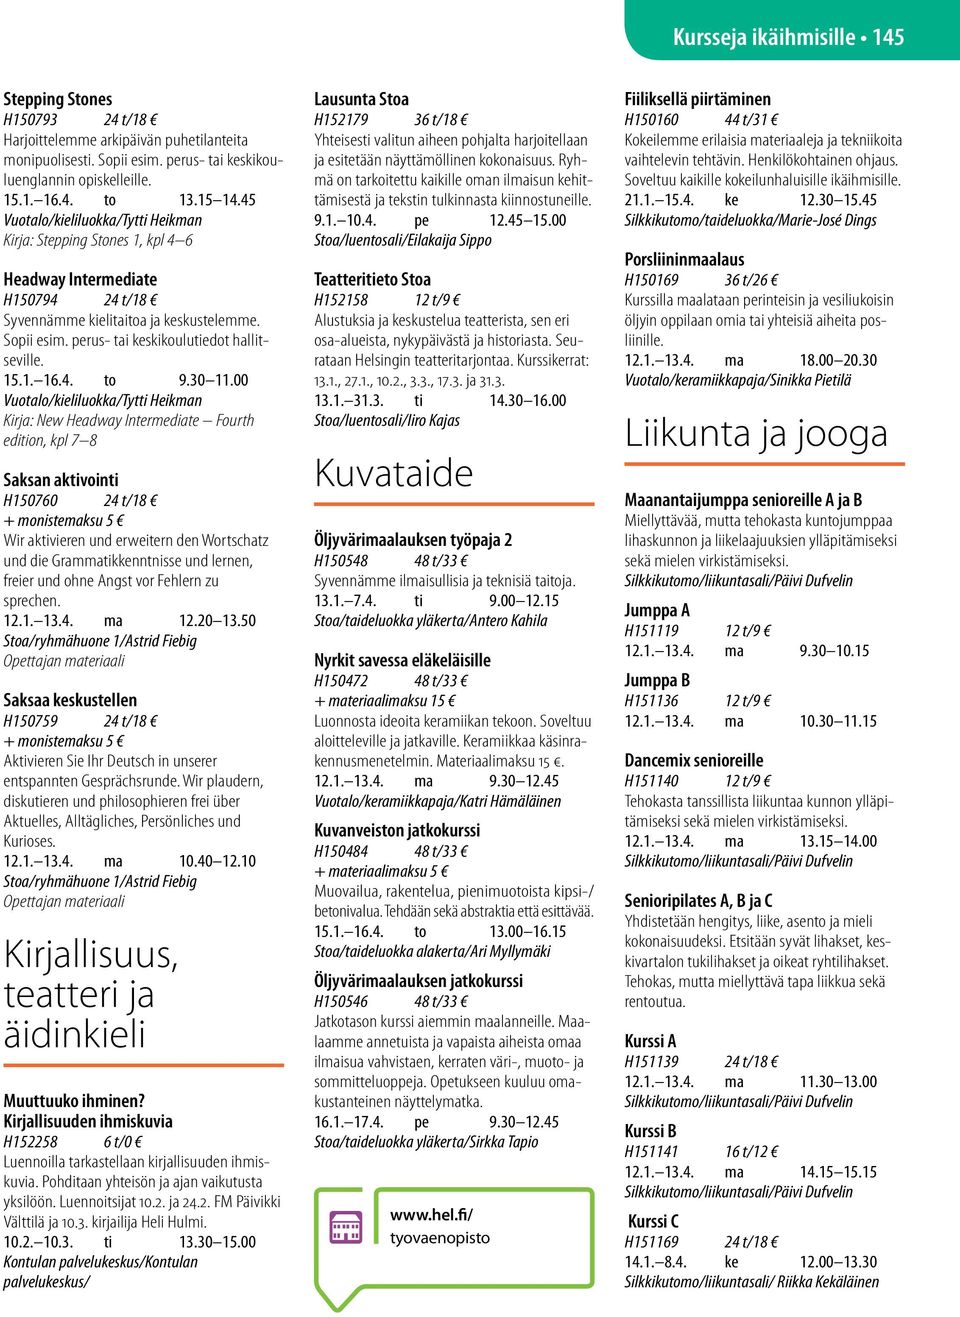 perus- tai keskikoulutiedot hallitseville. 15.1. 16.4. to 9.30 11.